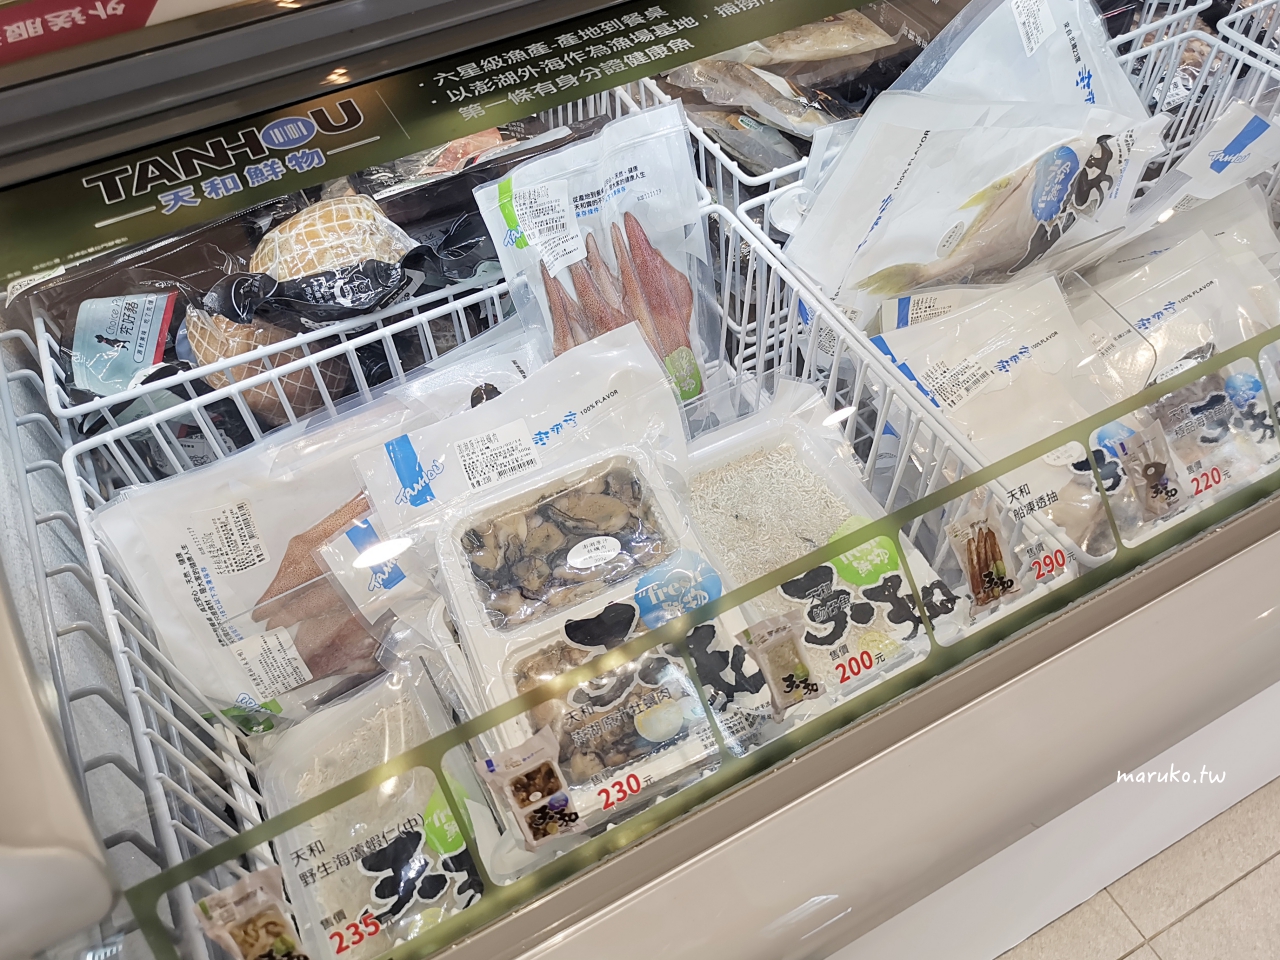 台北首間全家 FamiSuper 超市店 生鮮蔬果、進口食品、冷凍海鮮通通買的到！ @Maruko與美食有個約會